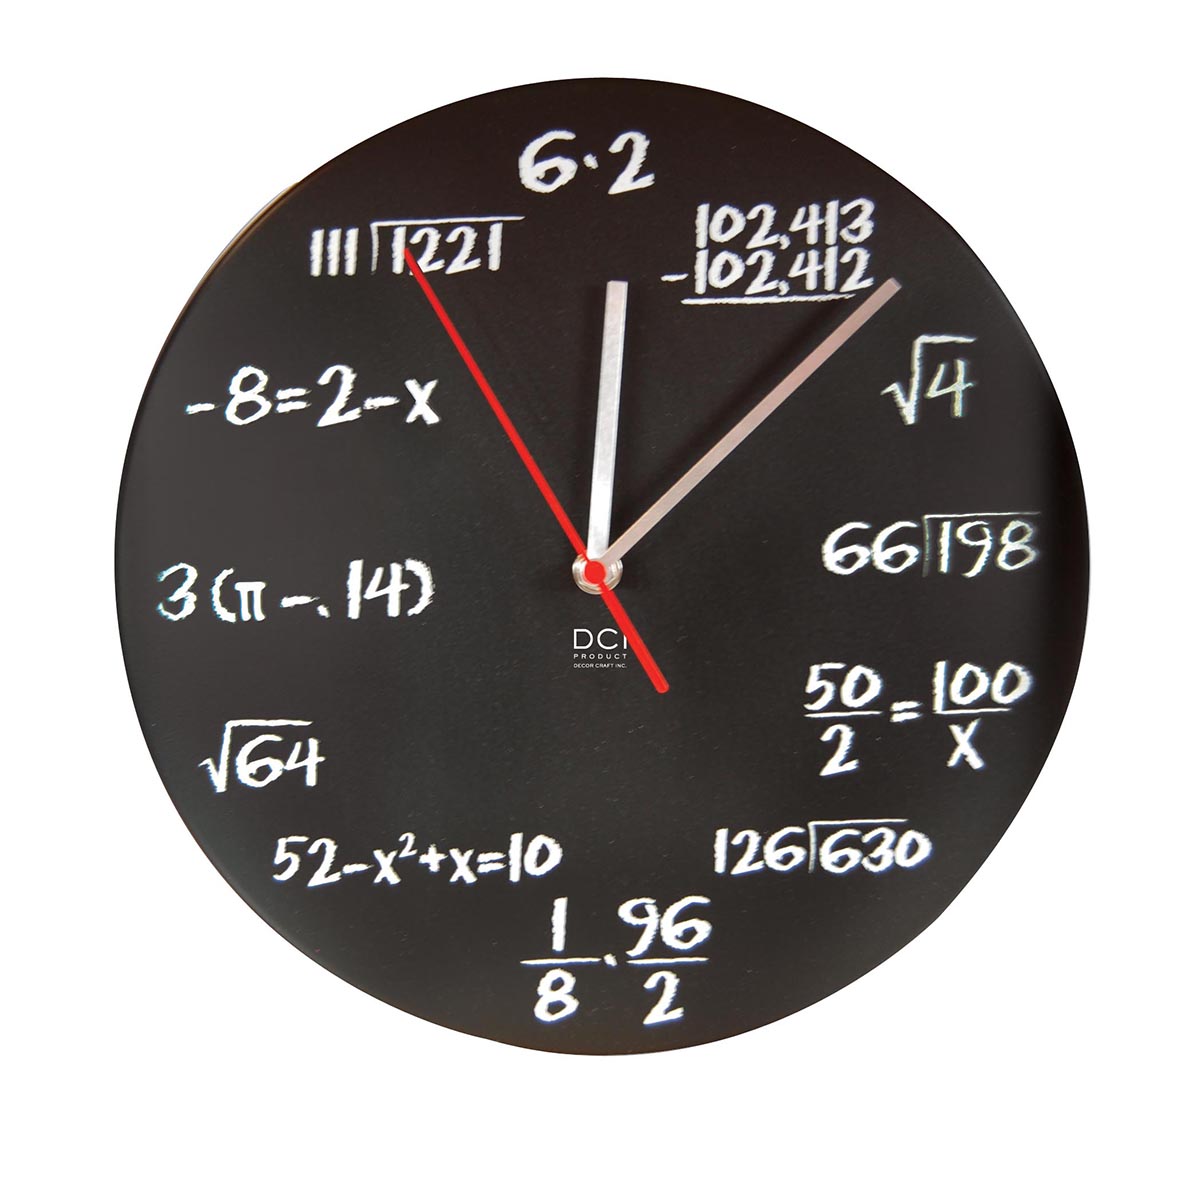 Geek Gifts Geek Clocks Gadget Gifts Science Gifts